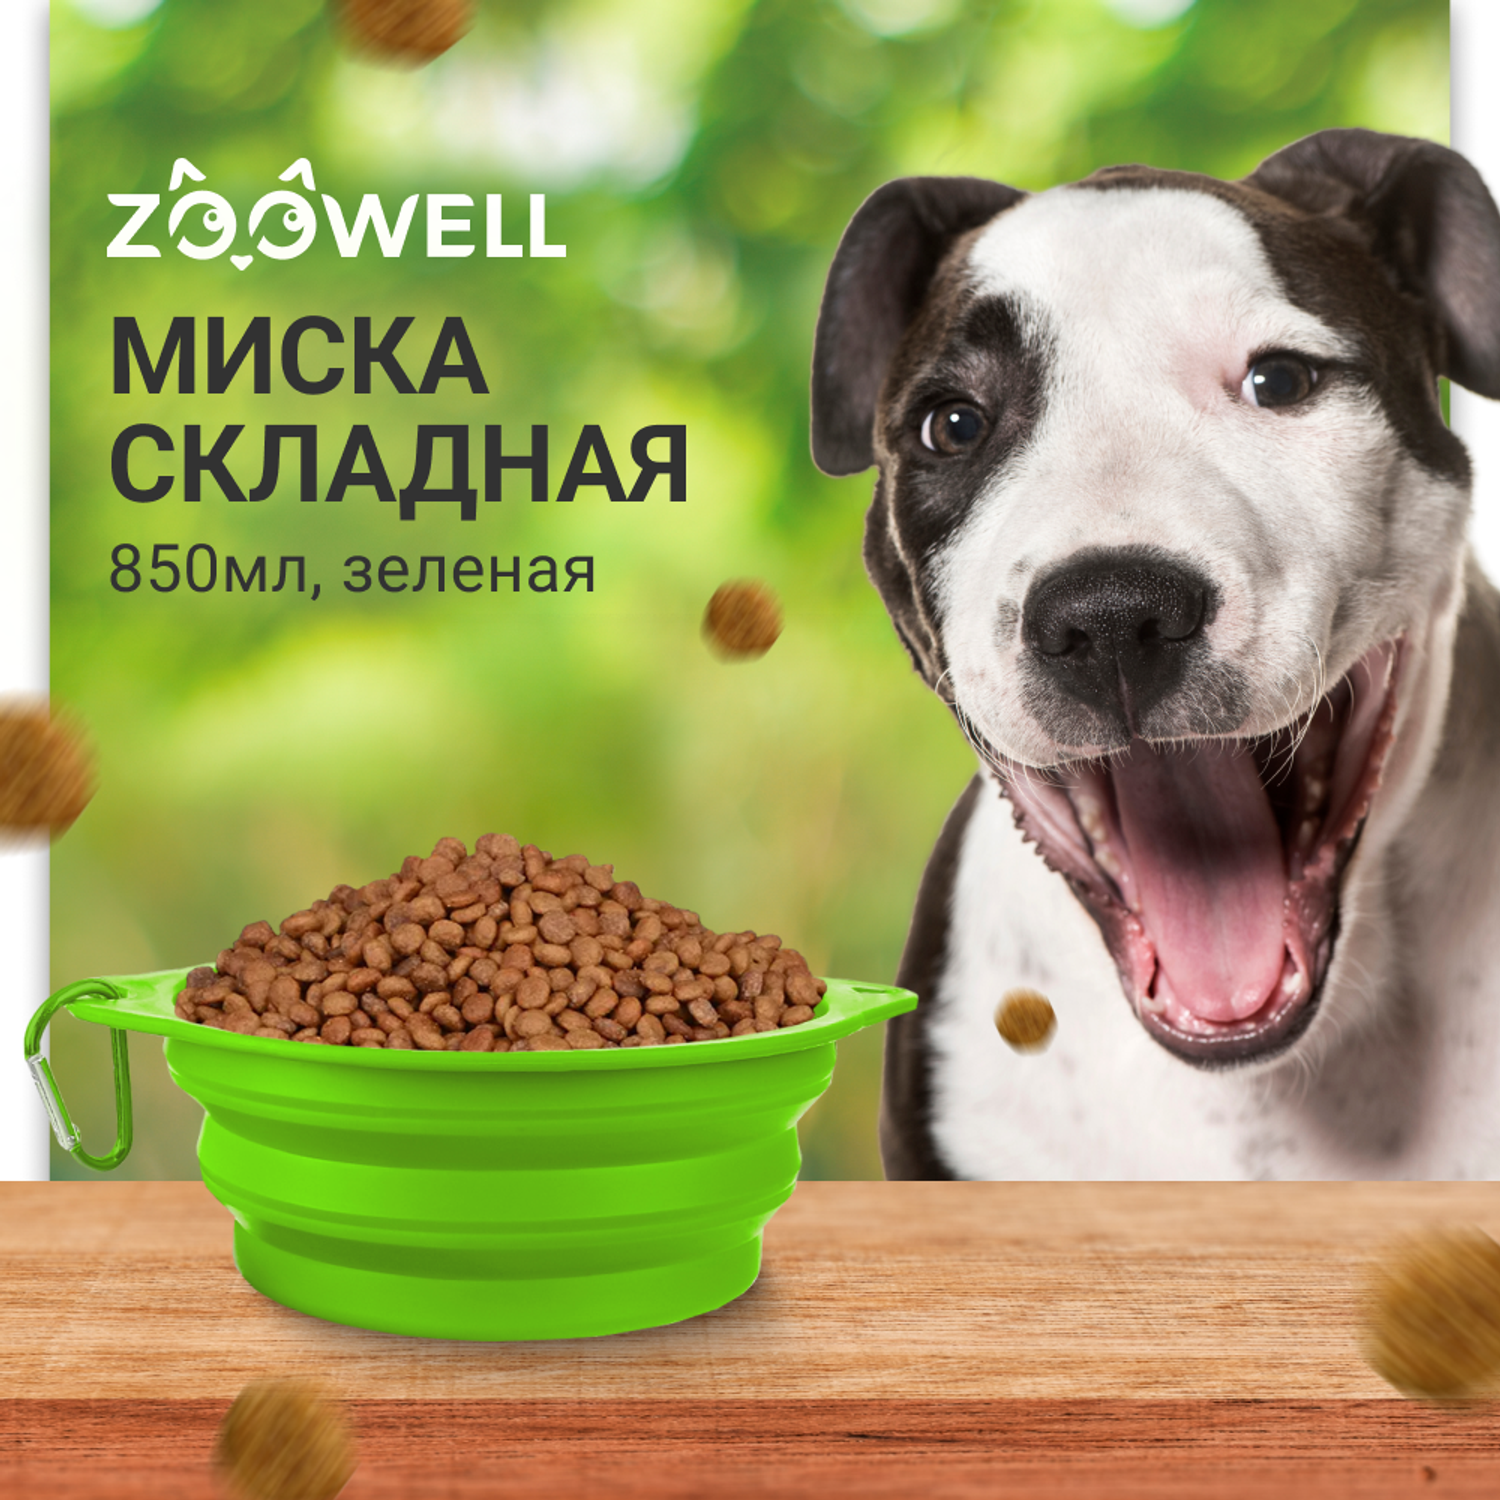 Миска ZDK силиконовая складная для собак ZooWeel зеленая 850мл - фото 2